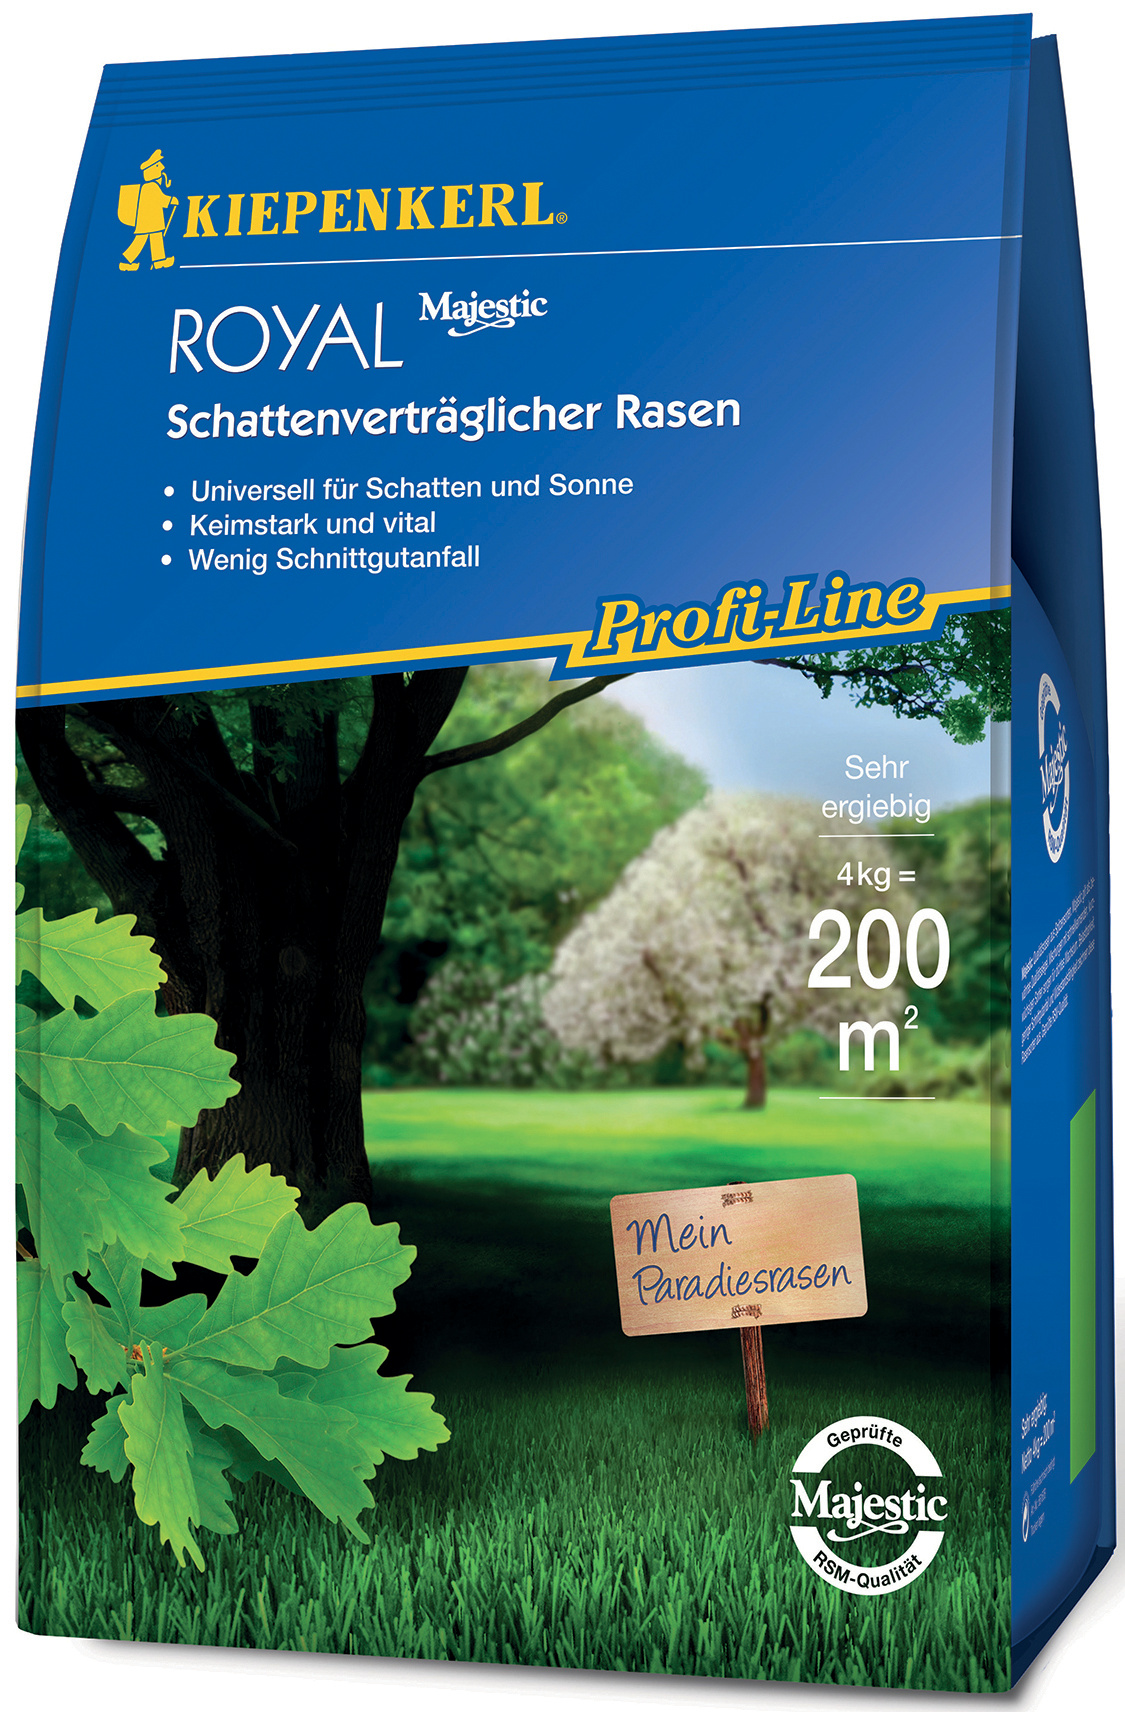 Profi-Line Royal Schattenverträglicher Rasen, 4 kg